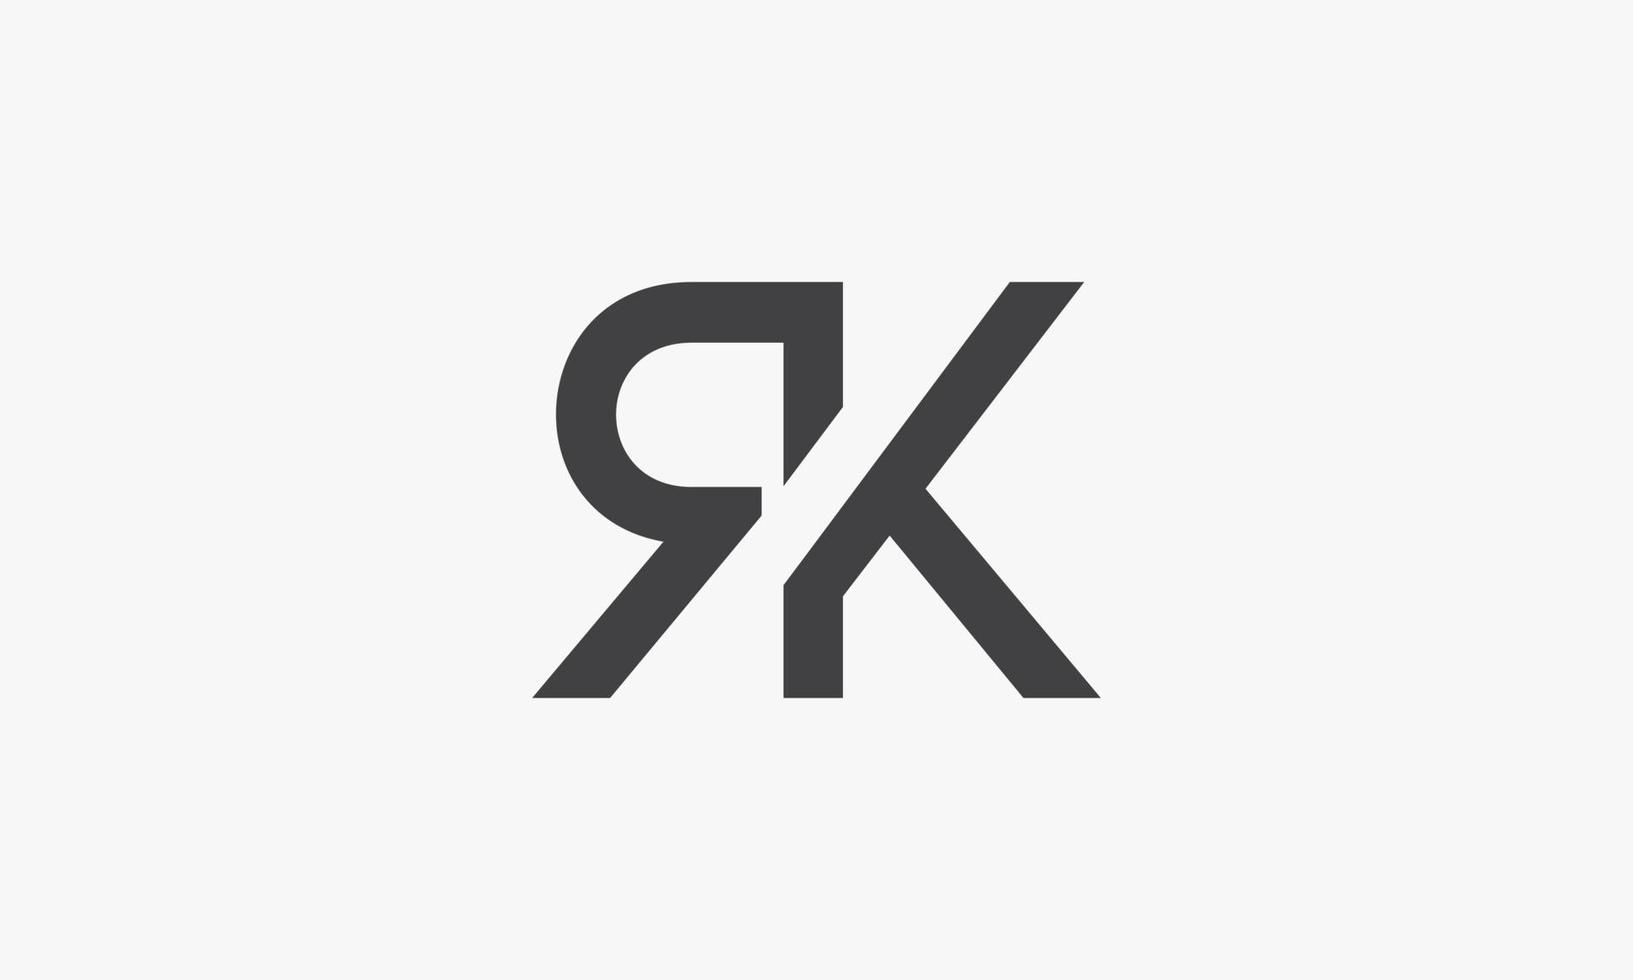 Logo de letra rk aislado sobre fondo blanco. vector